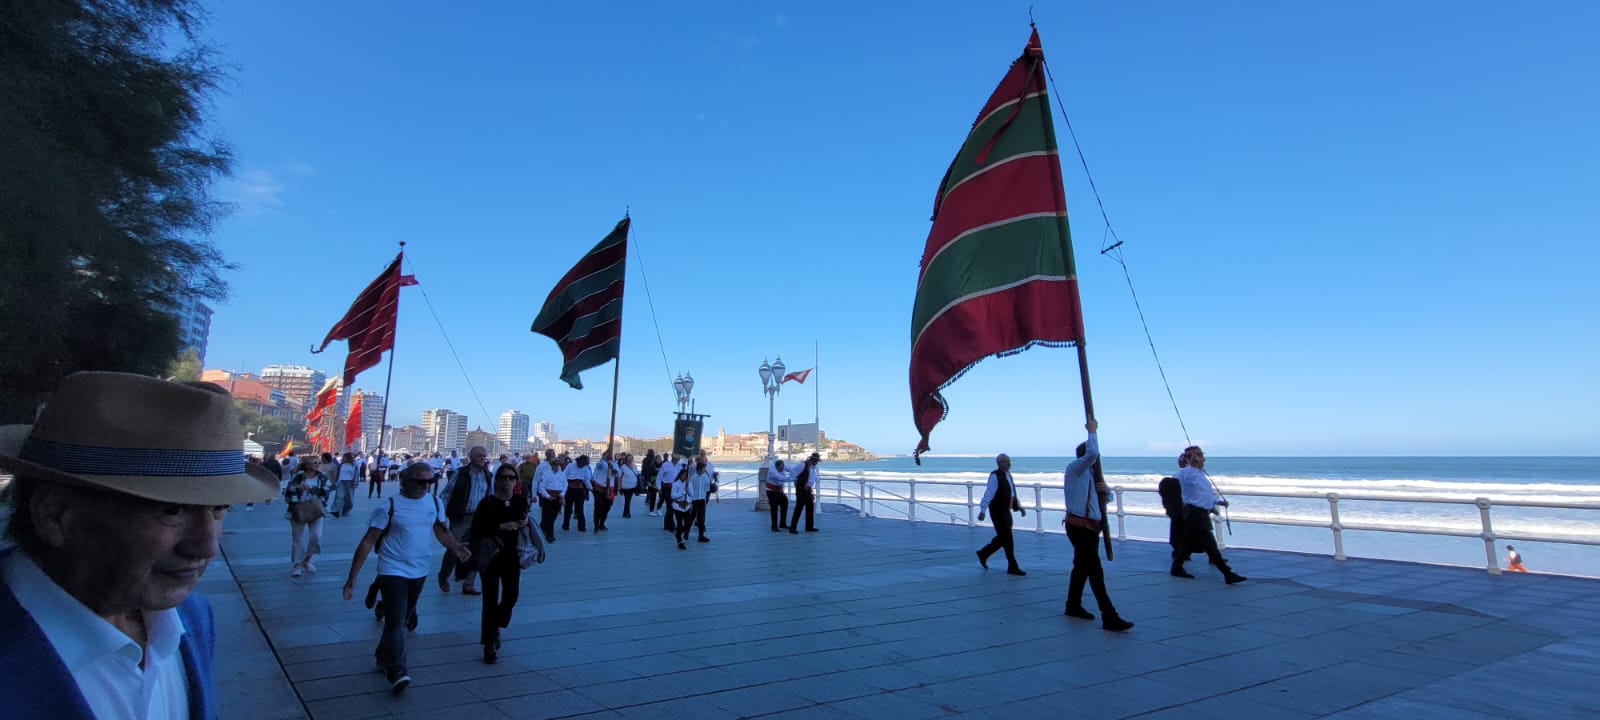 La Casa de León en Asturias celebró las fiestas patronales con un desfile marítimo de pendones a ritmo de dulzaina. | L.N.C.